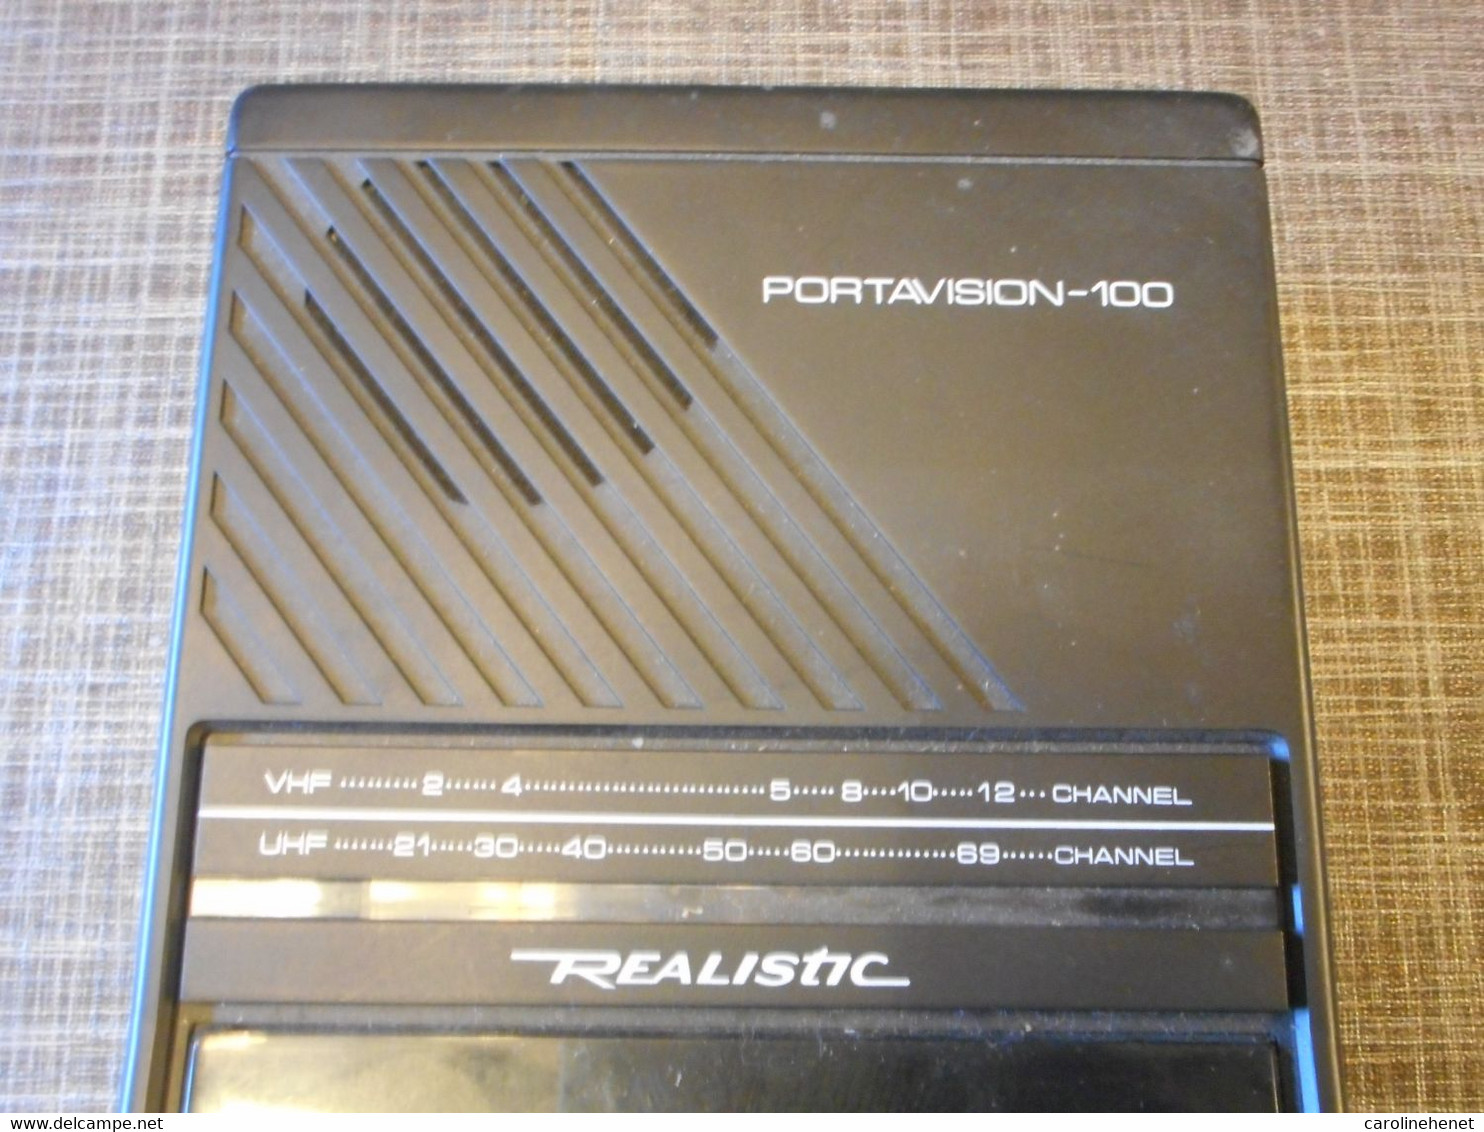 PORTAVISION-100 Realistic - Televisión